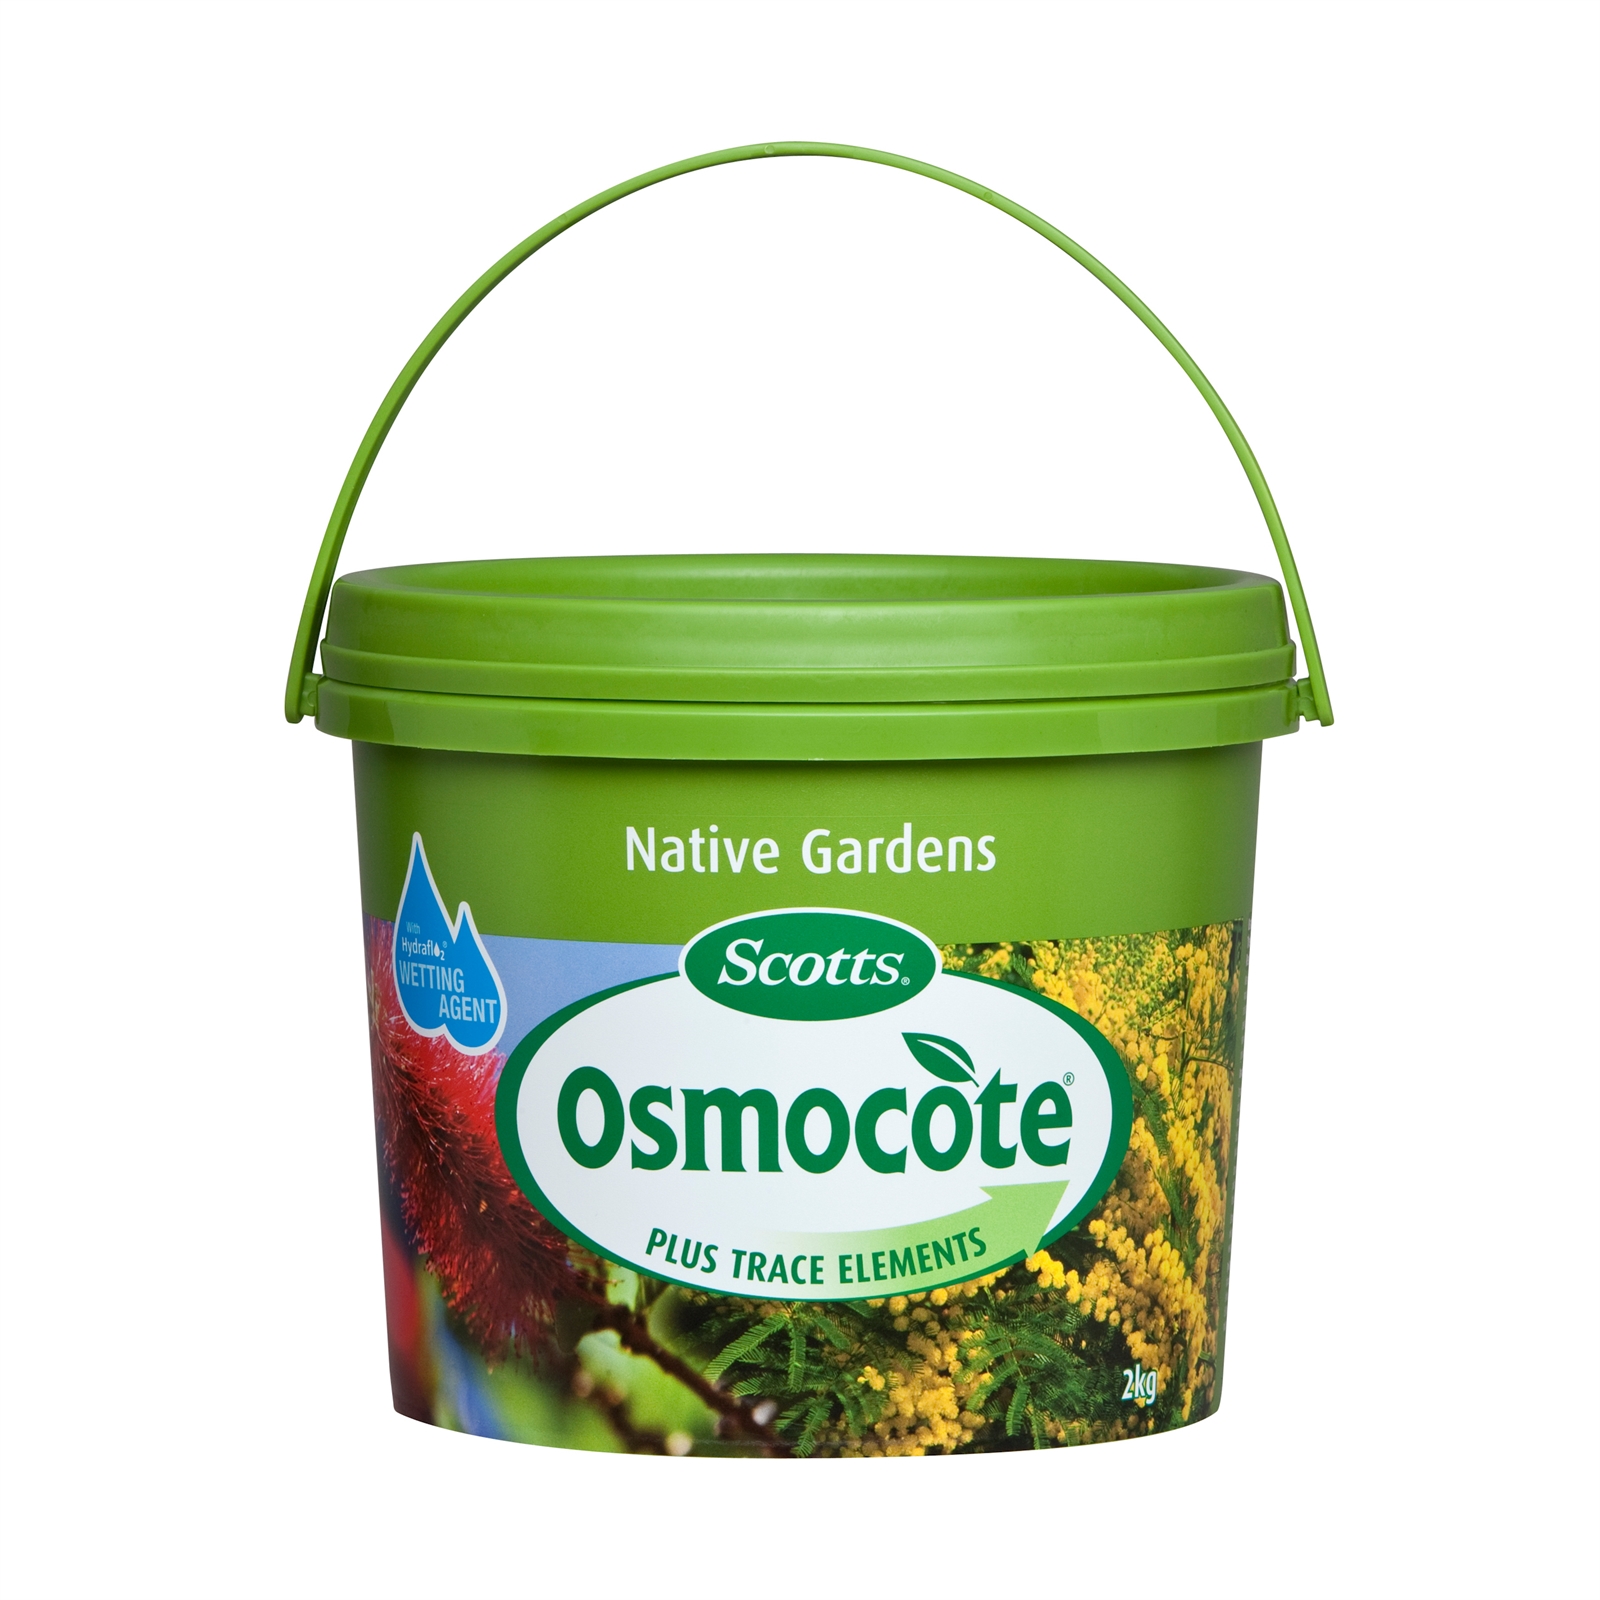 Osmocote 2kg Native Garden Controlled Release Fertiliser